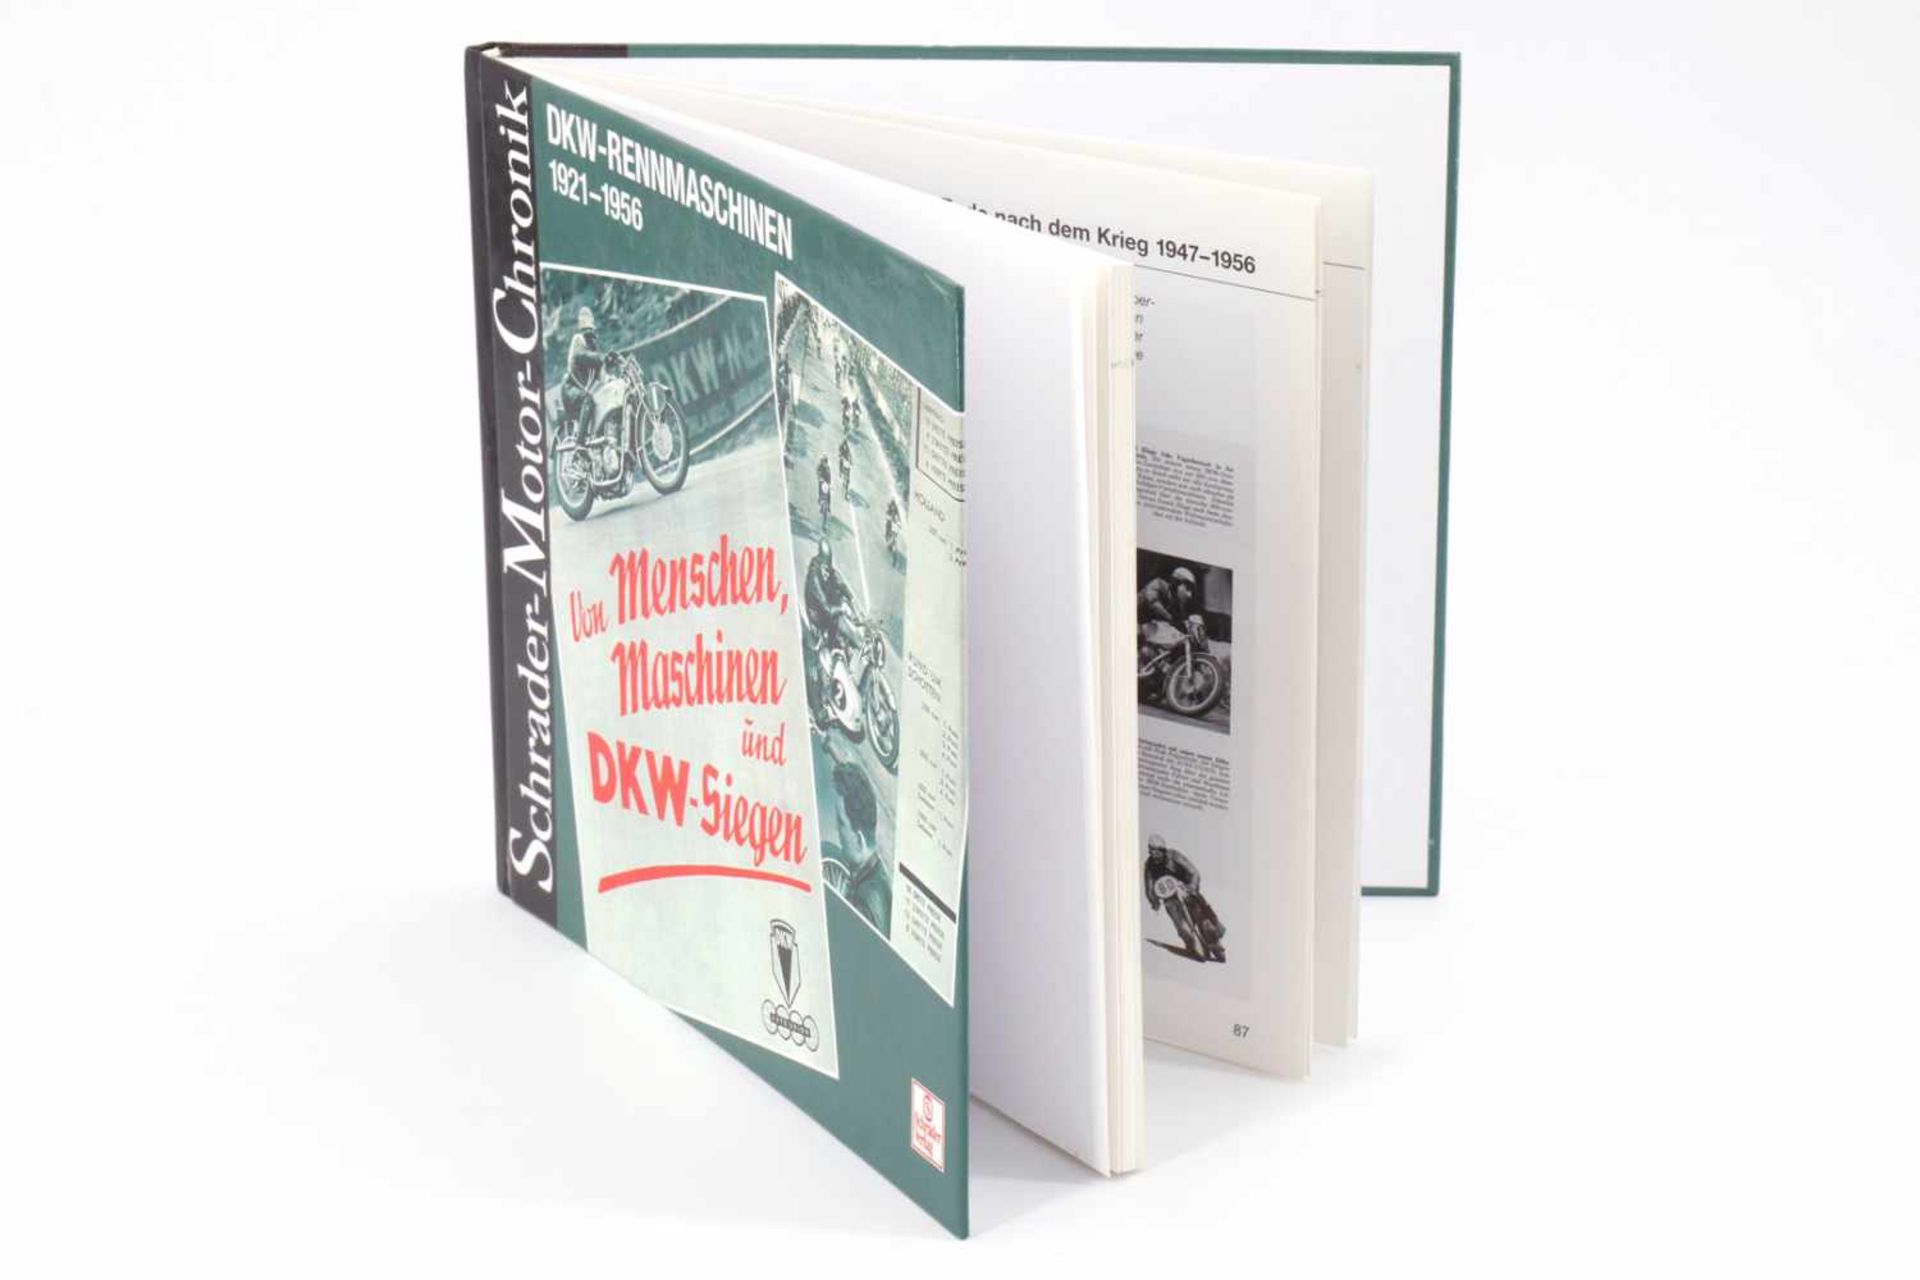 Buch "Schrader--Motor-Chronik", "DKW-Rennmaschinen 1921-1956", "Von Menschen, Maschinen und DKW-